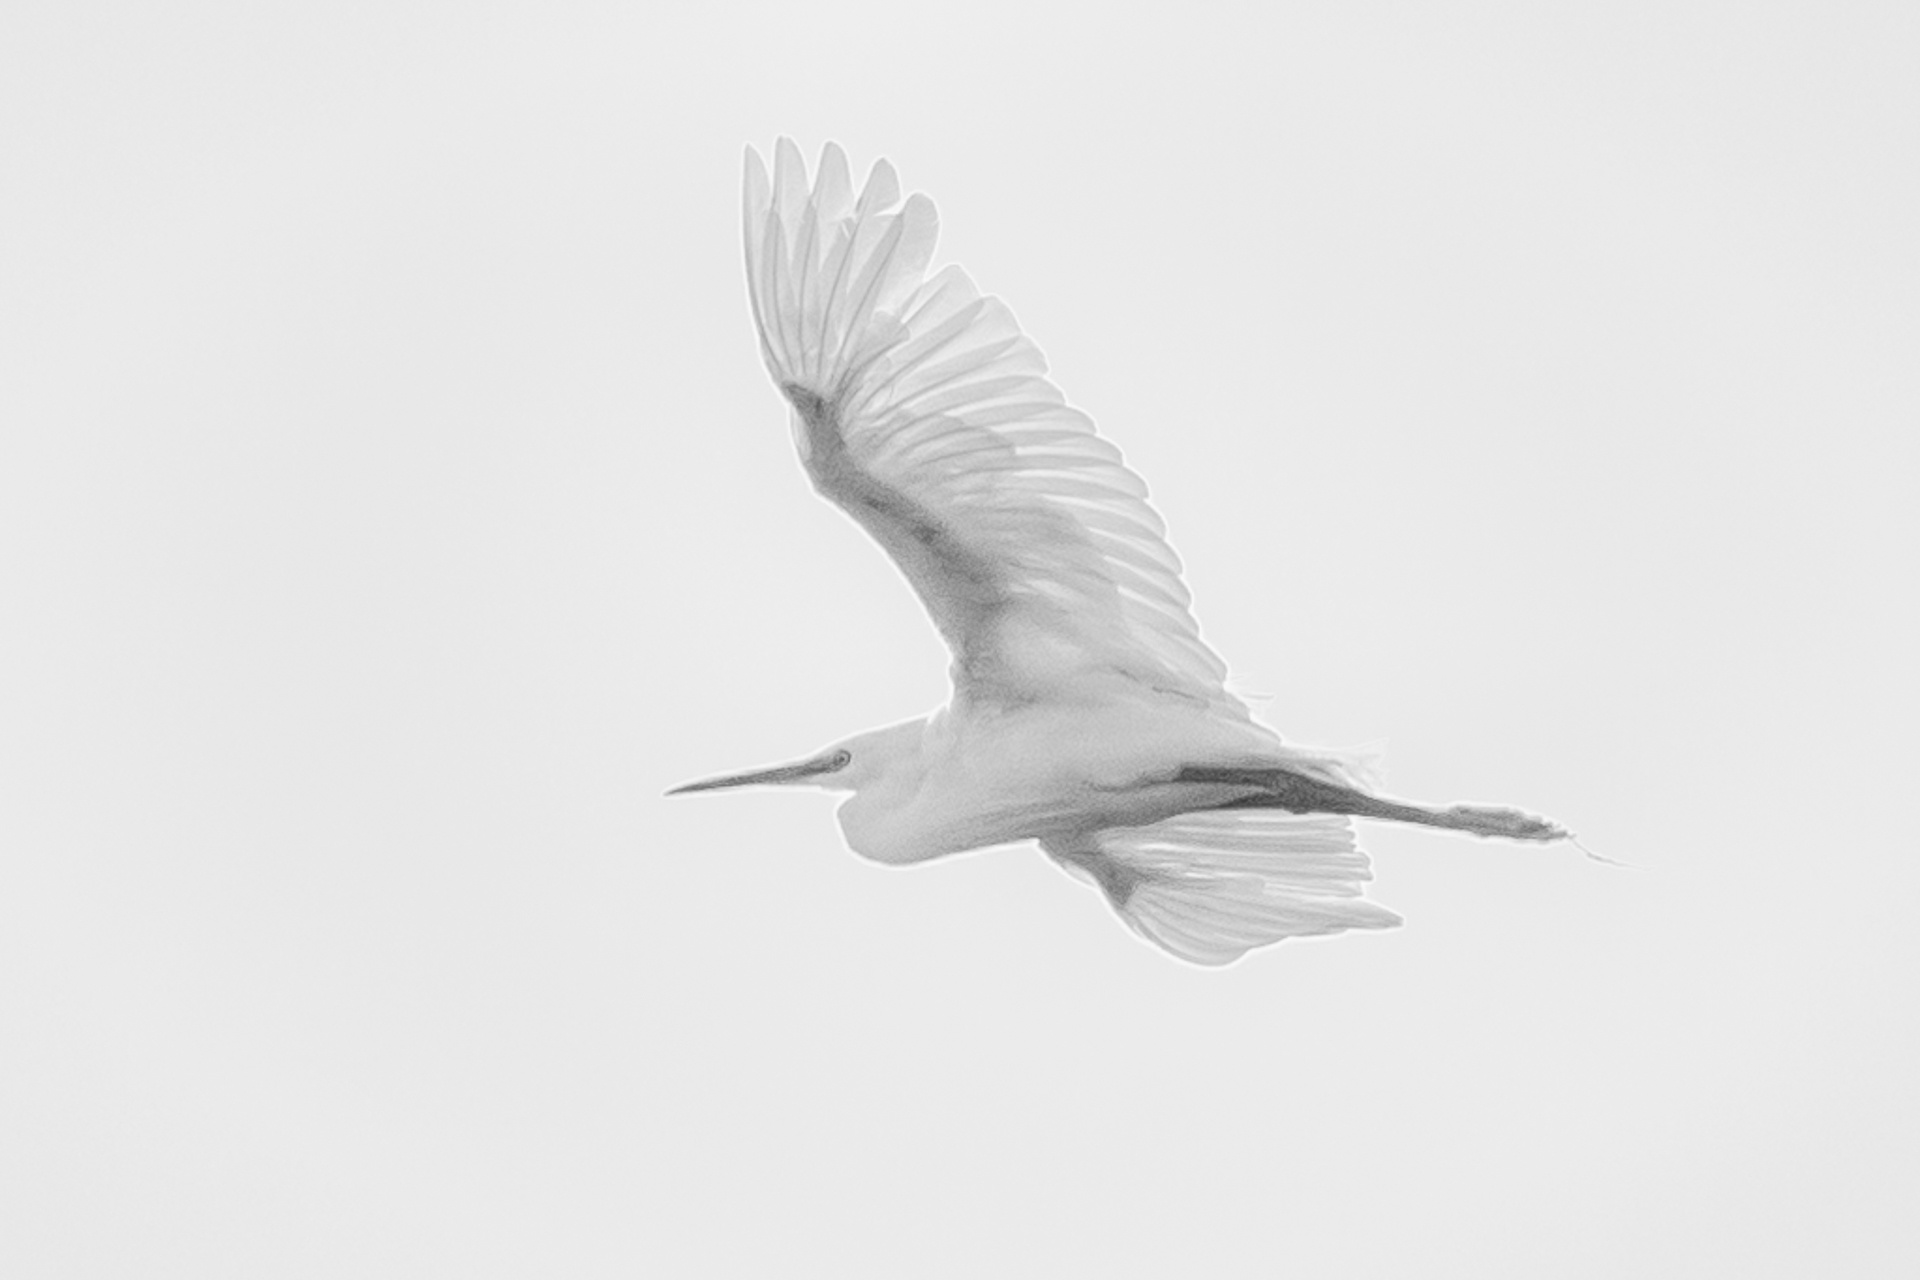 Little Egret in flight